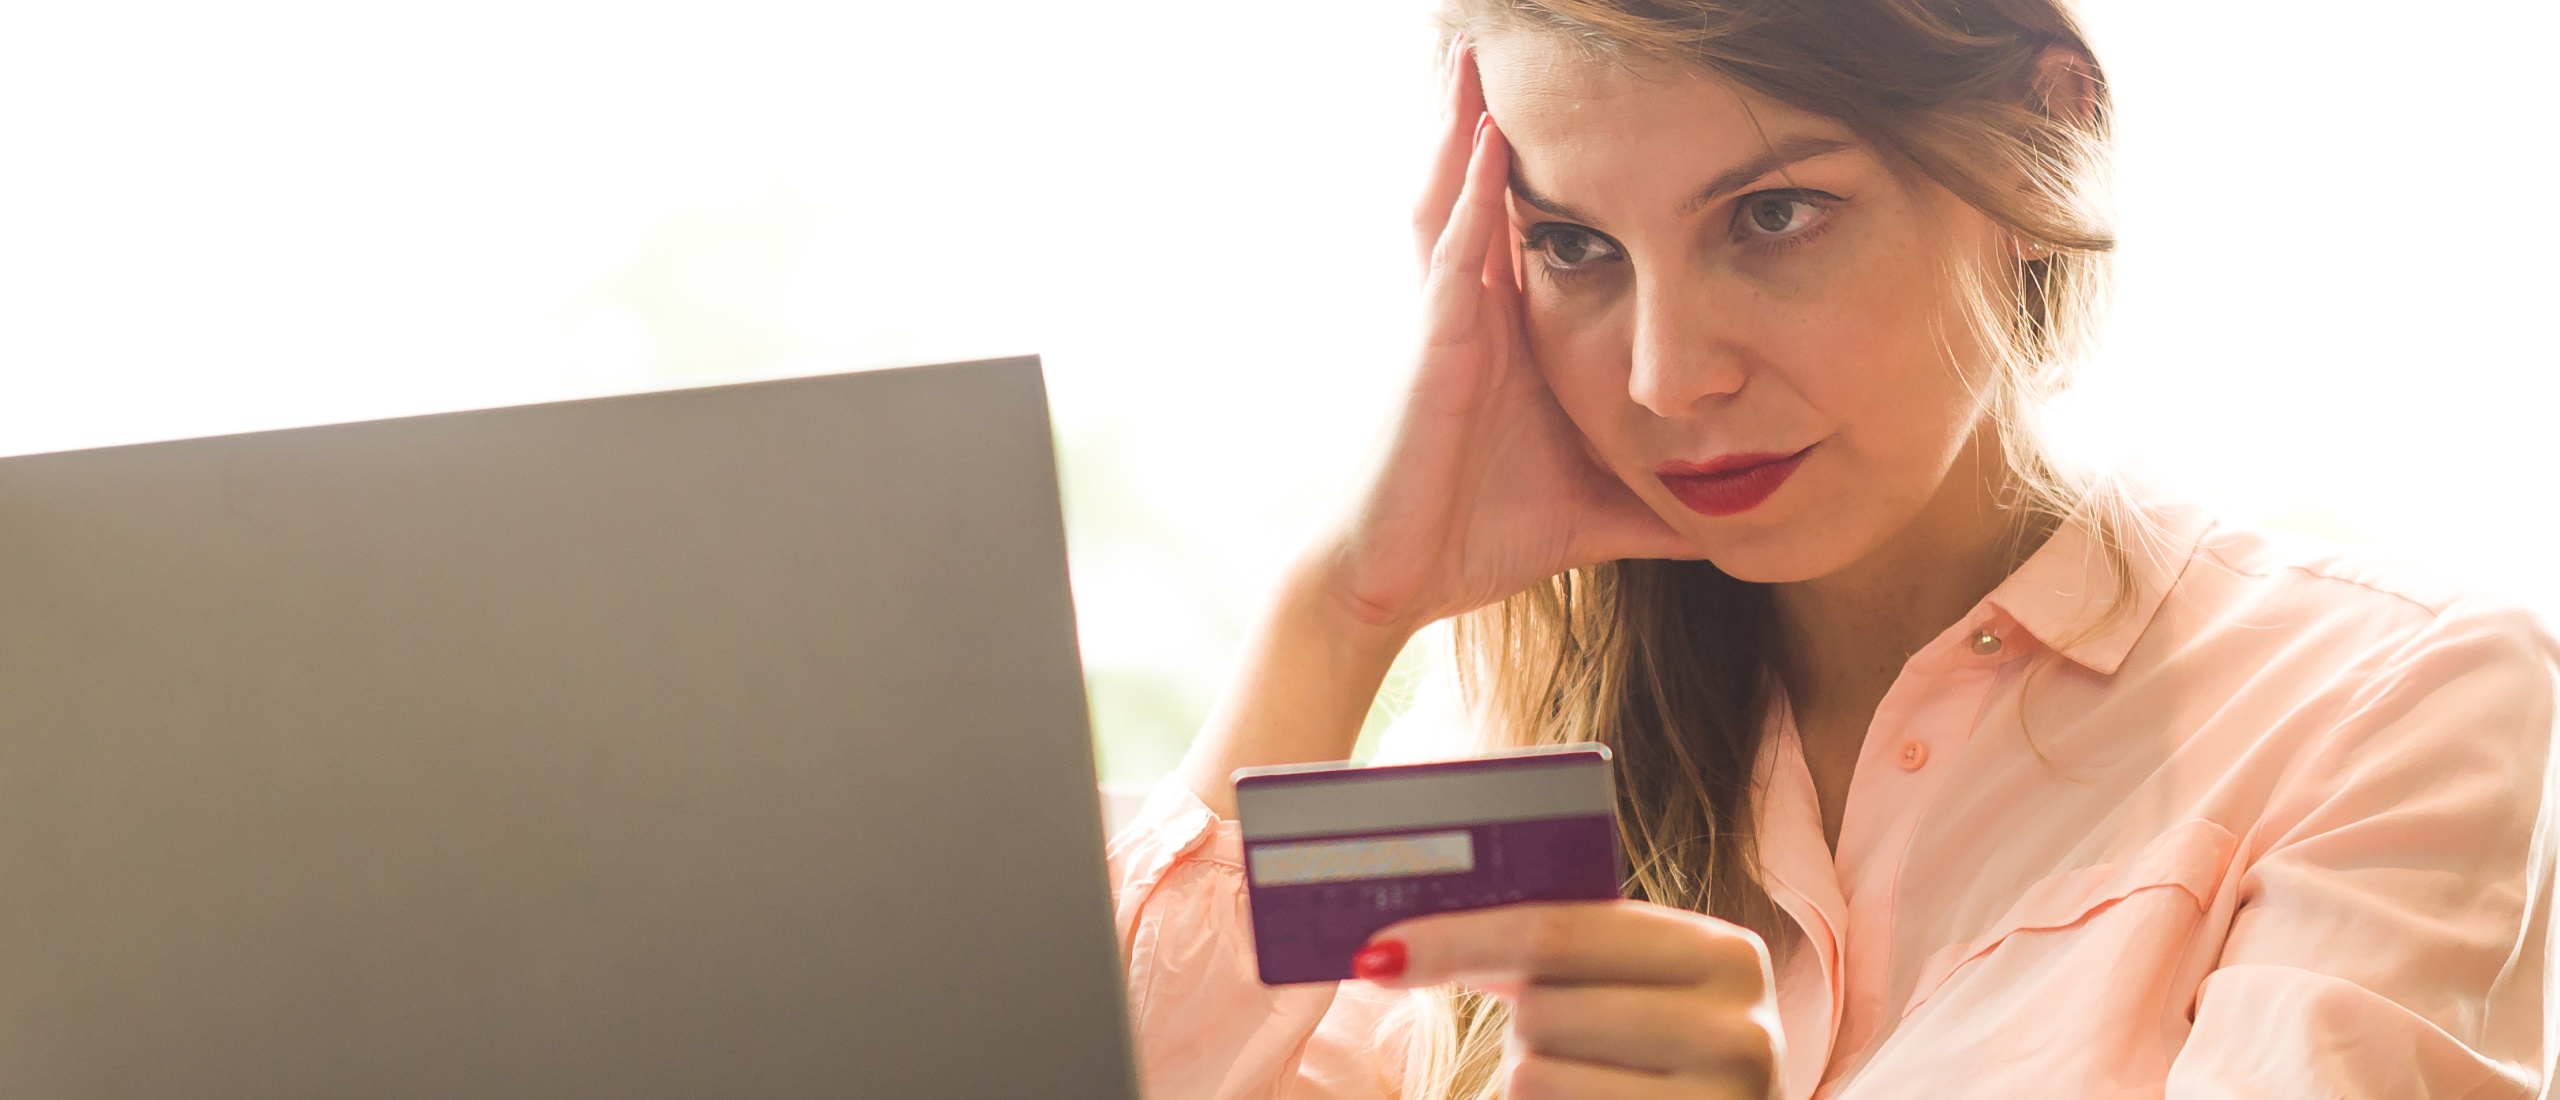 Belast de belastingdienst het betaaltegoed op je debitcard?